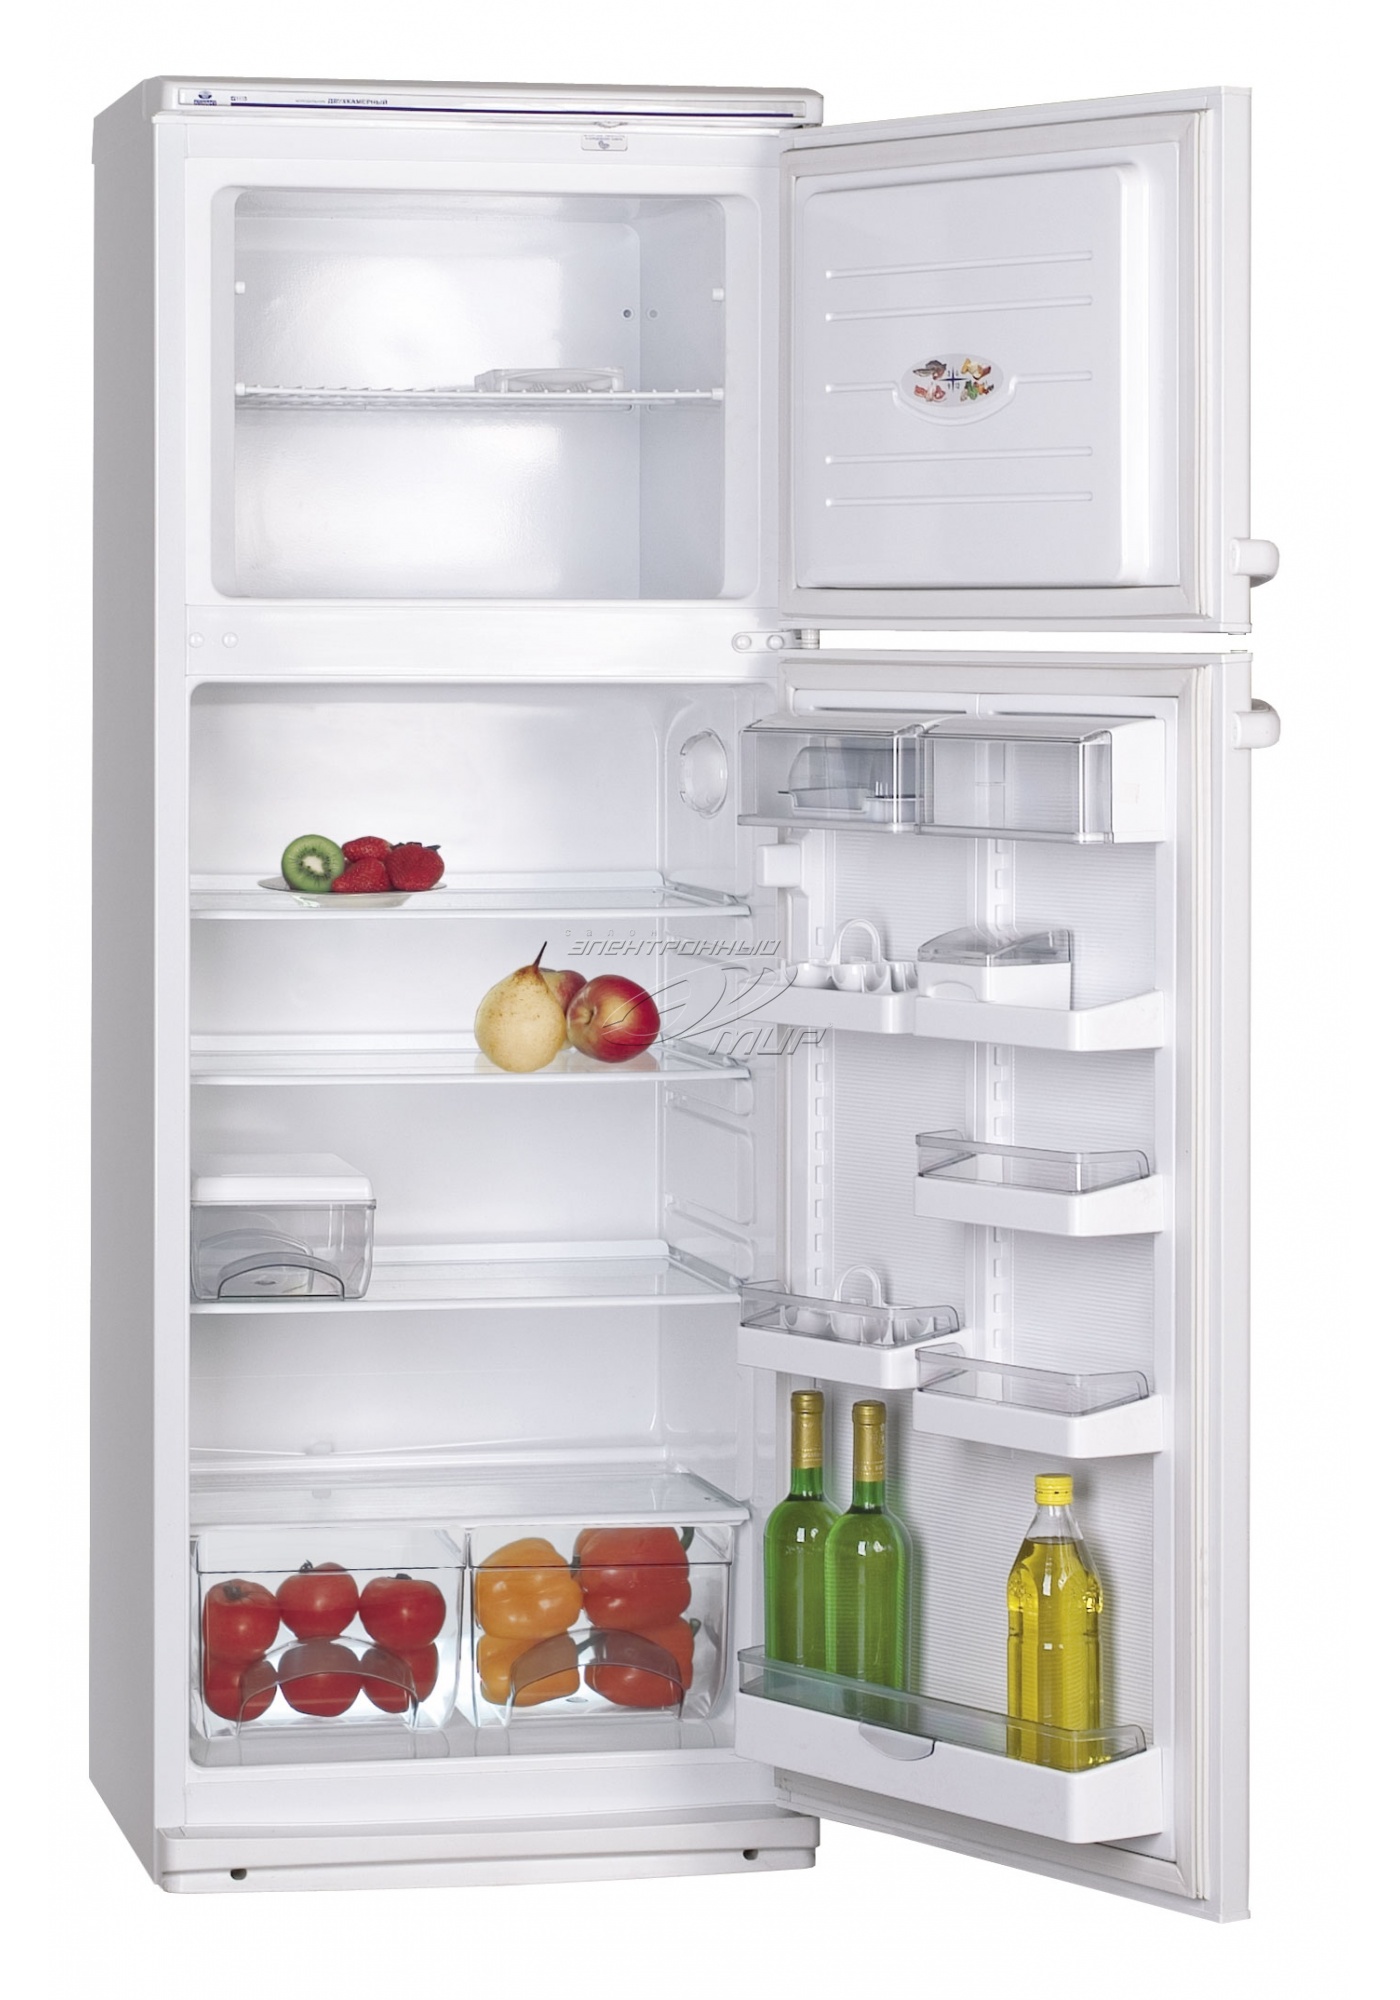 Как правильно ухаживать за холодильником?